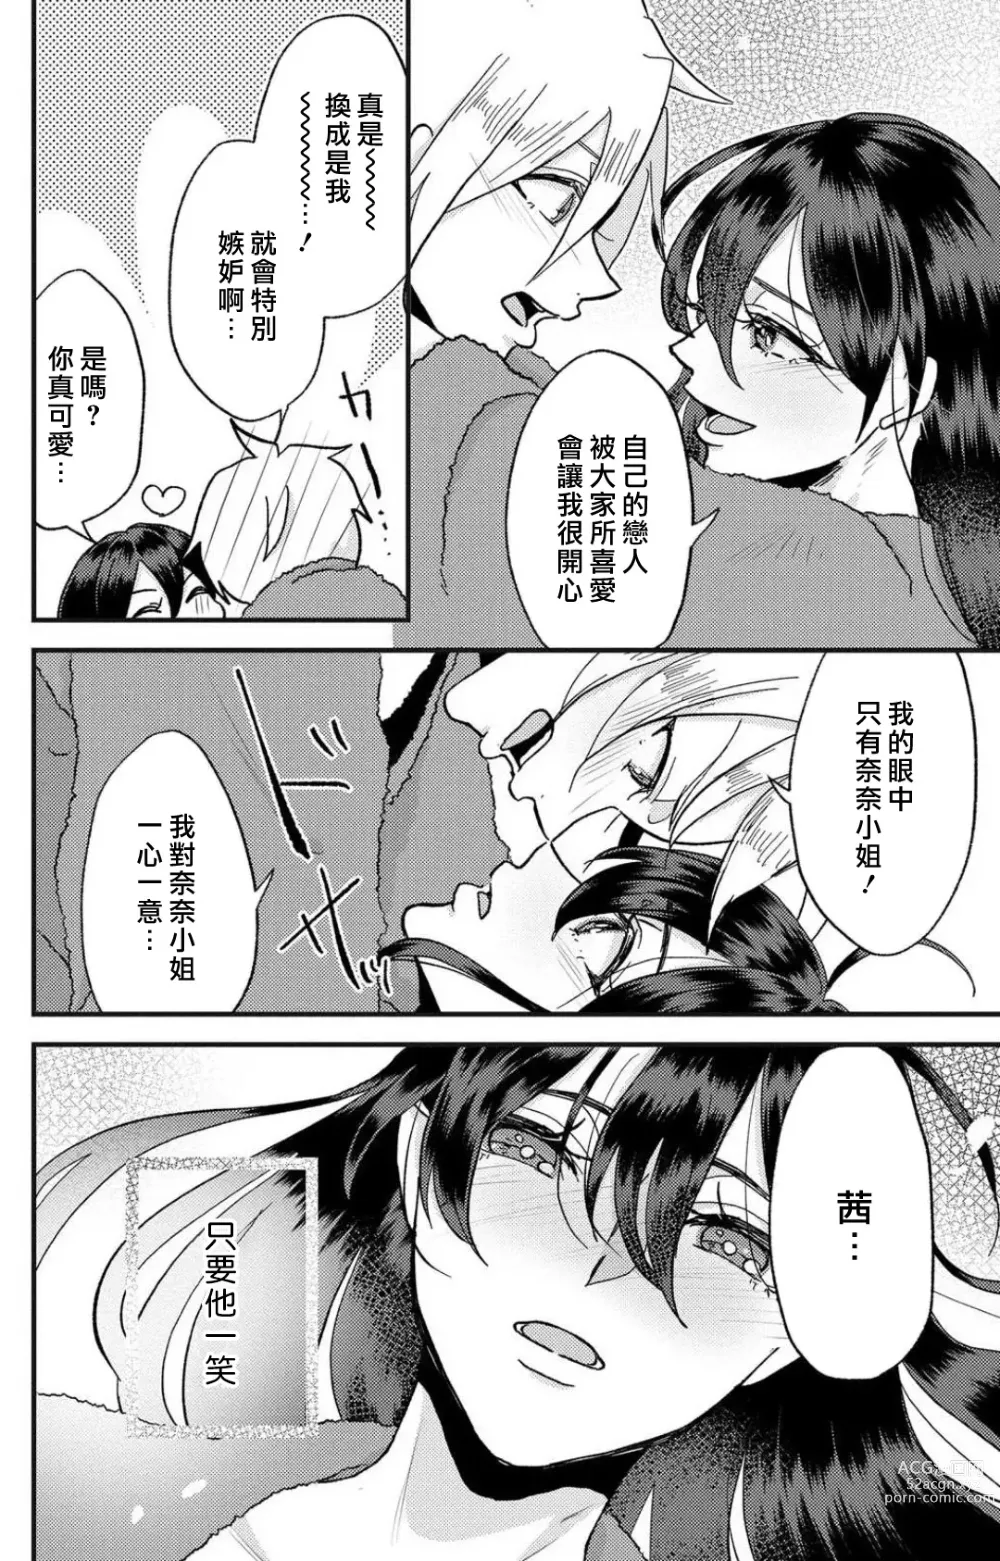 Page 175 of manga 败在他的眼泪攻势下 奈奈大小姐想被哭唧唧的男子推倒！ 1-5